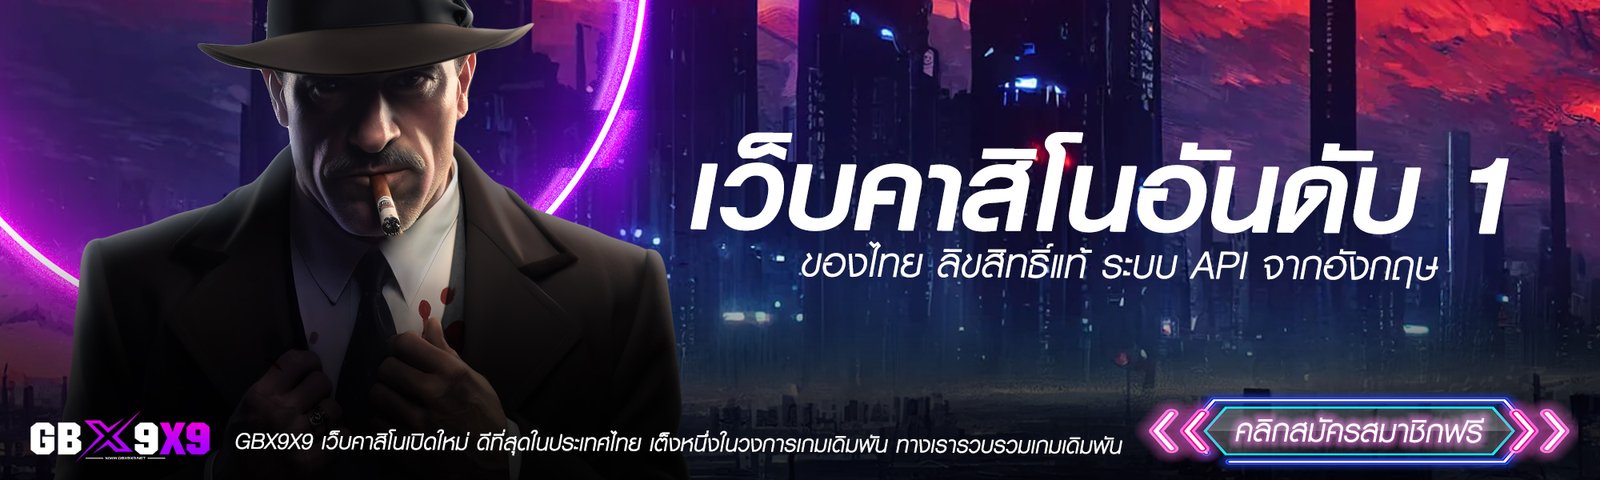 คาสิโนออนไลน์อันดับ 1 เกมลิขสิทธิ์แท้ ดีที่สุดในประเทศไทย